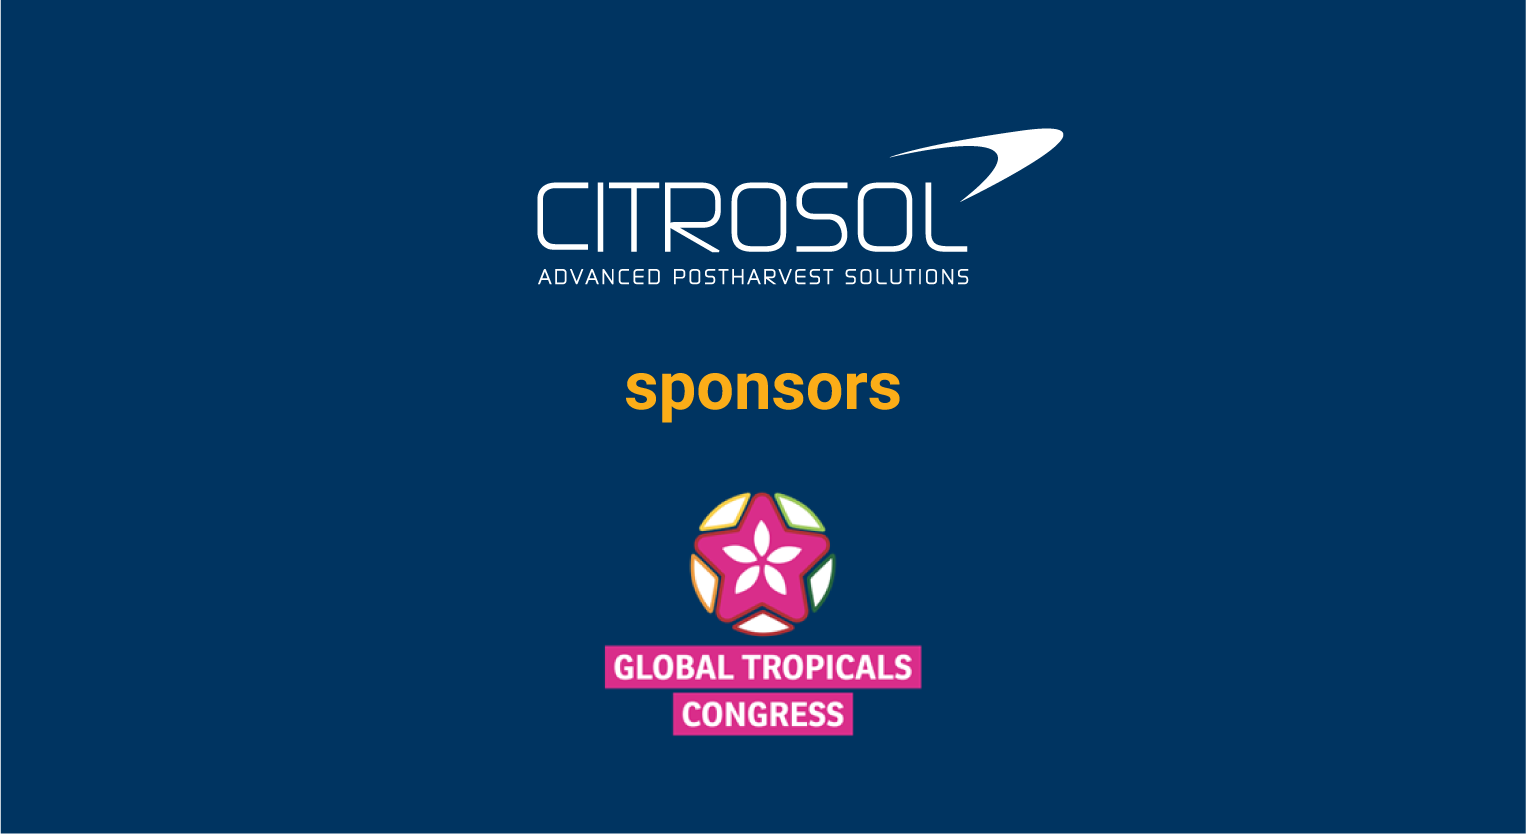 Citrosol presenta en el Global Tropicals Congress sus soluciones para reducir pérdidas postcosecha en aguacate y limas